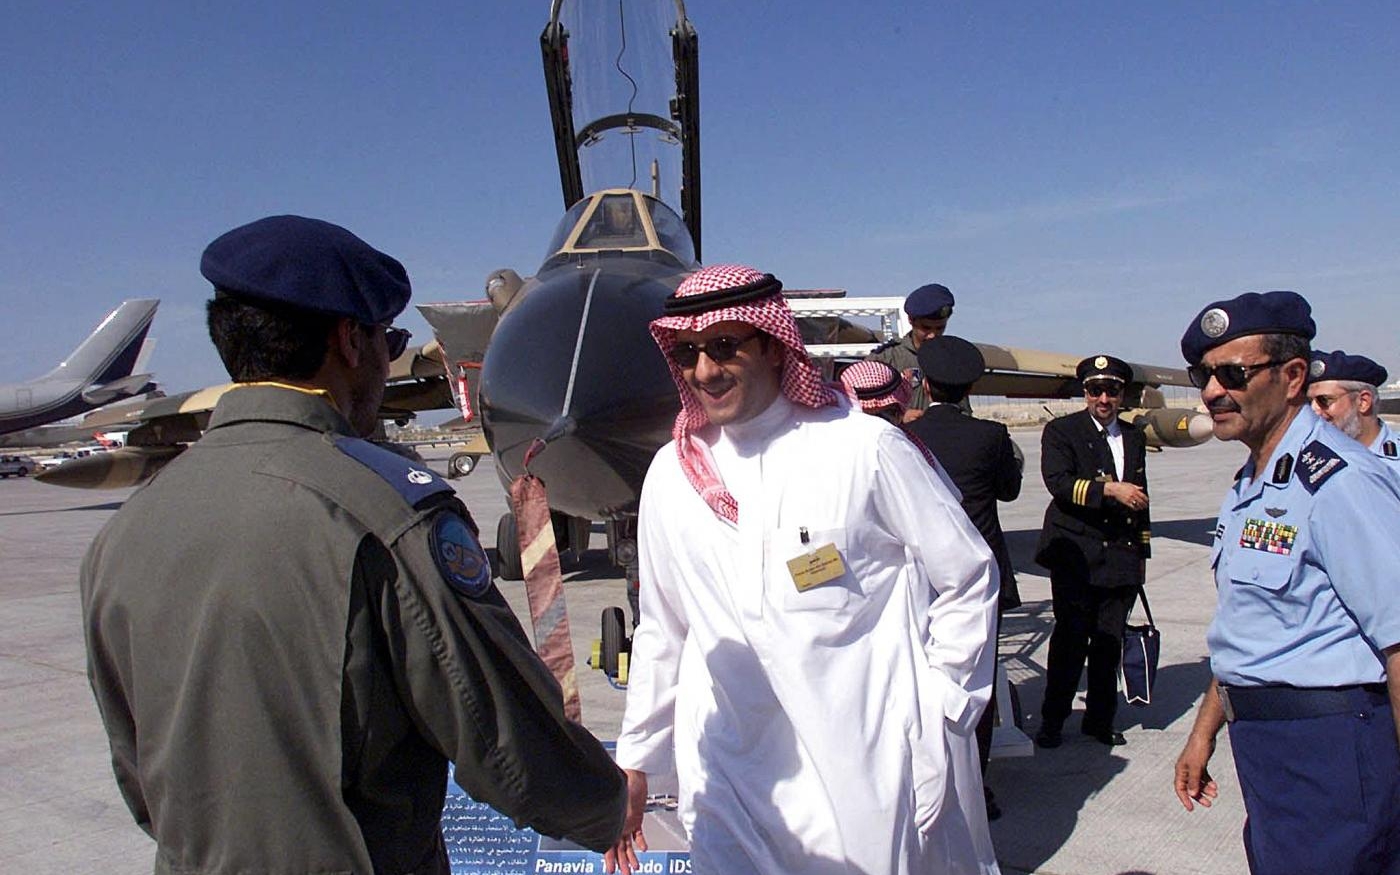 Le prince saoudien Sultan ben Salmane ben Abdelaziz al-Saoud est devenu le premier Arabe à voyager dans l’espace grâce au programme de lancement de la navette spatiale Discovery de la NASA  (AFP)